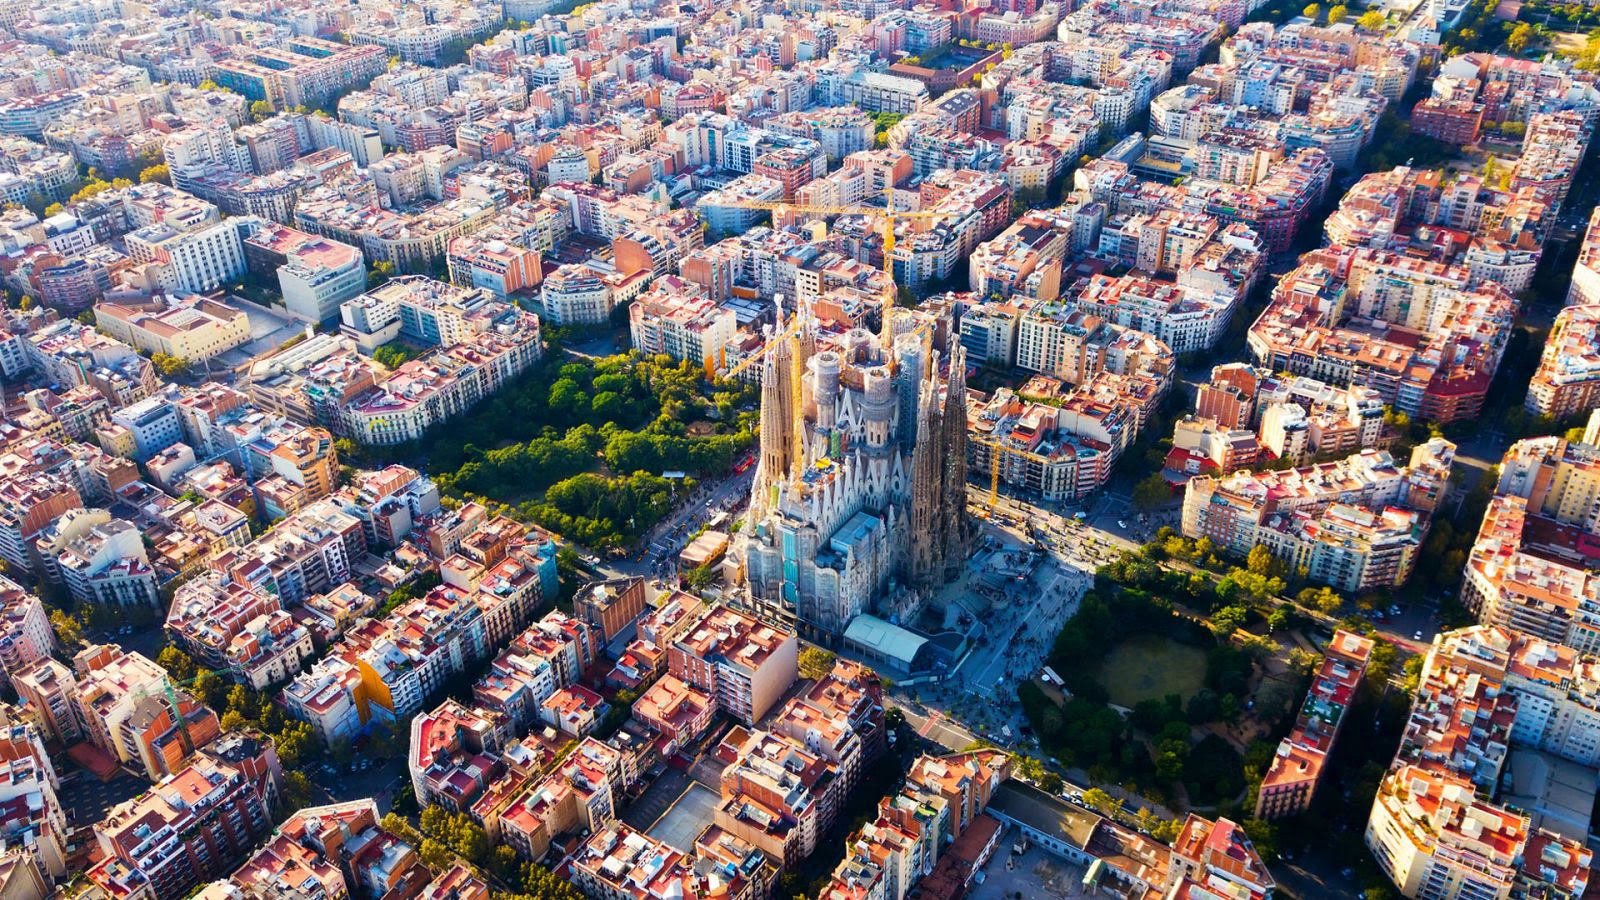 Ciudades para el Siglo XXI - Barcelona, ciudad vertebrada I parte - Ver ahora